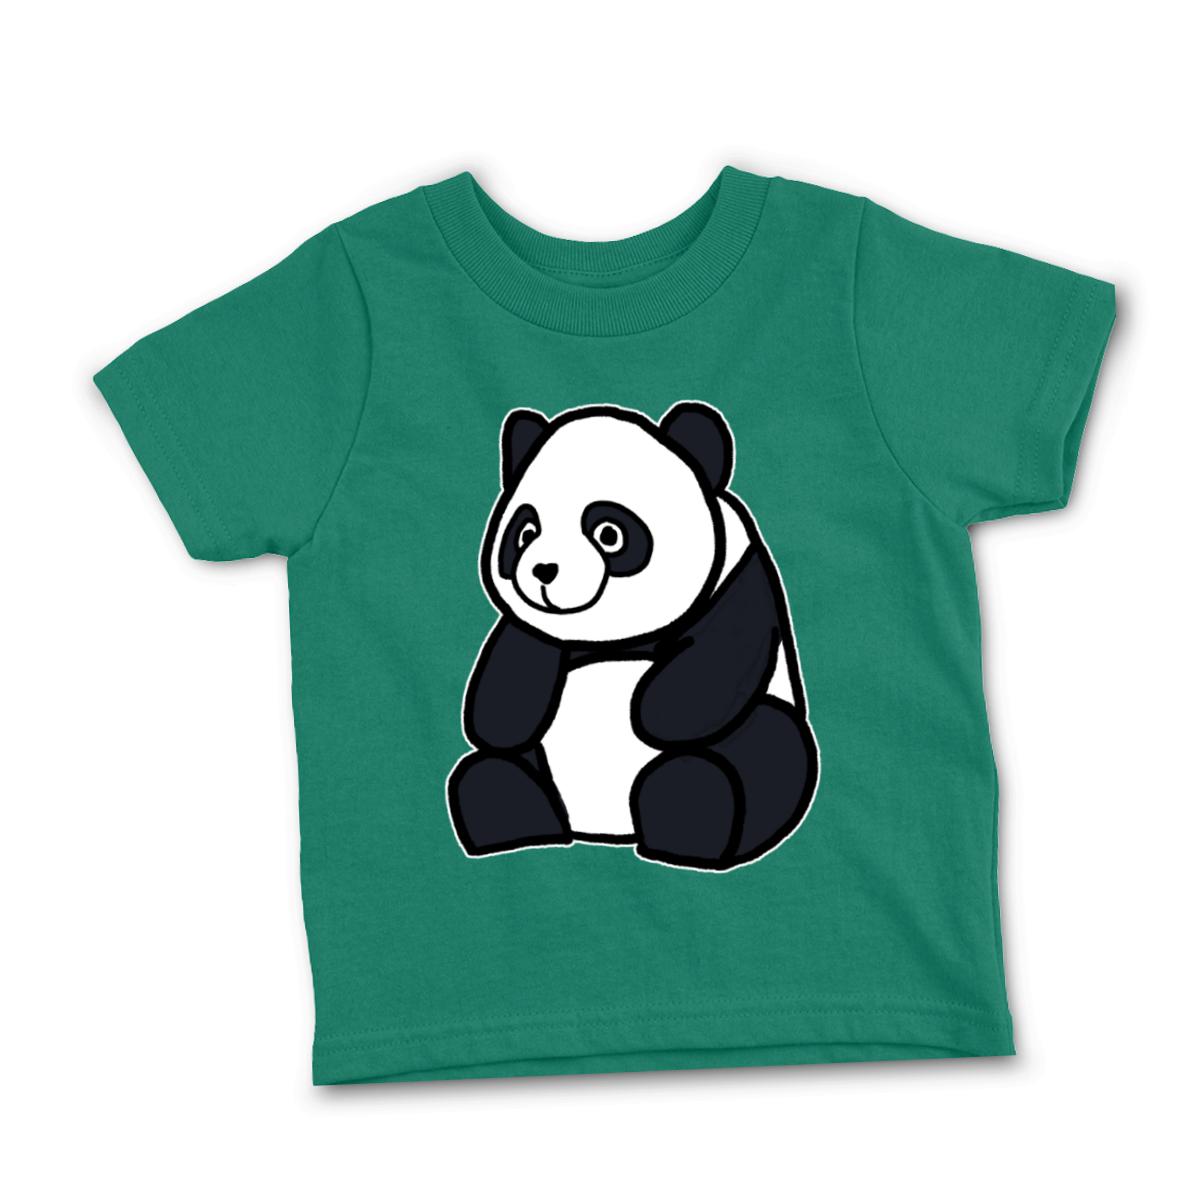 Panda Toddler Tee 2T kelly